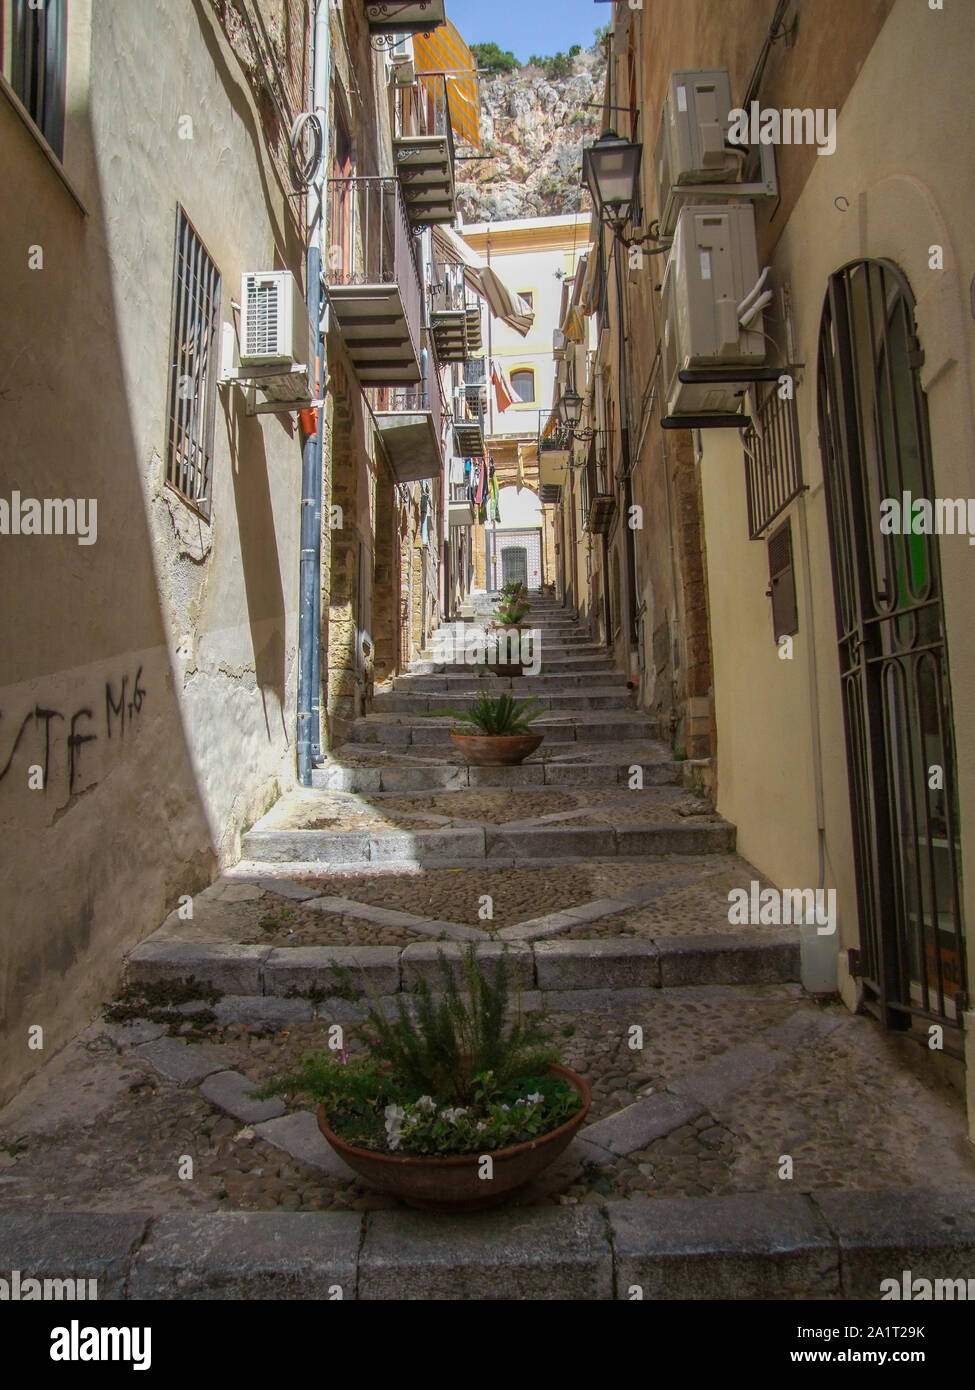 Ruelle idyllique dans une ville nommée Cefalu en Sicile, Italie Banque D'Images